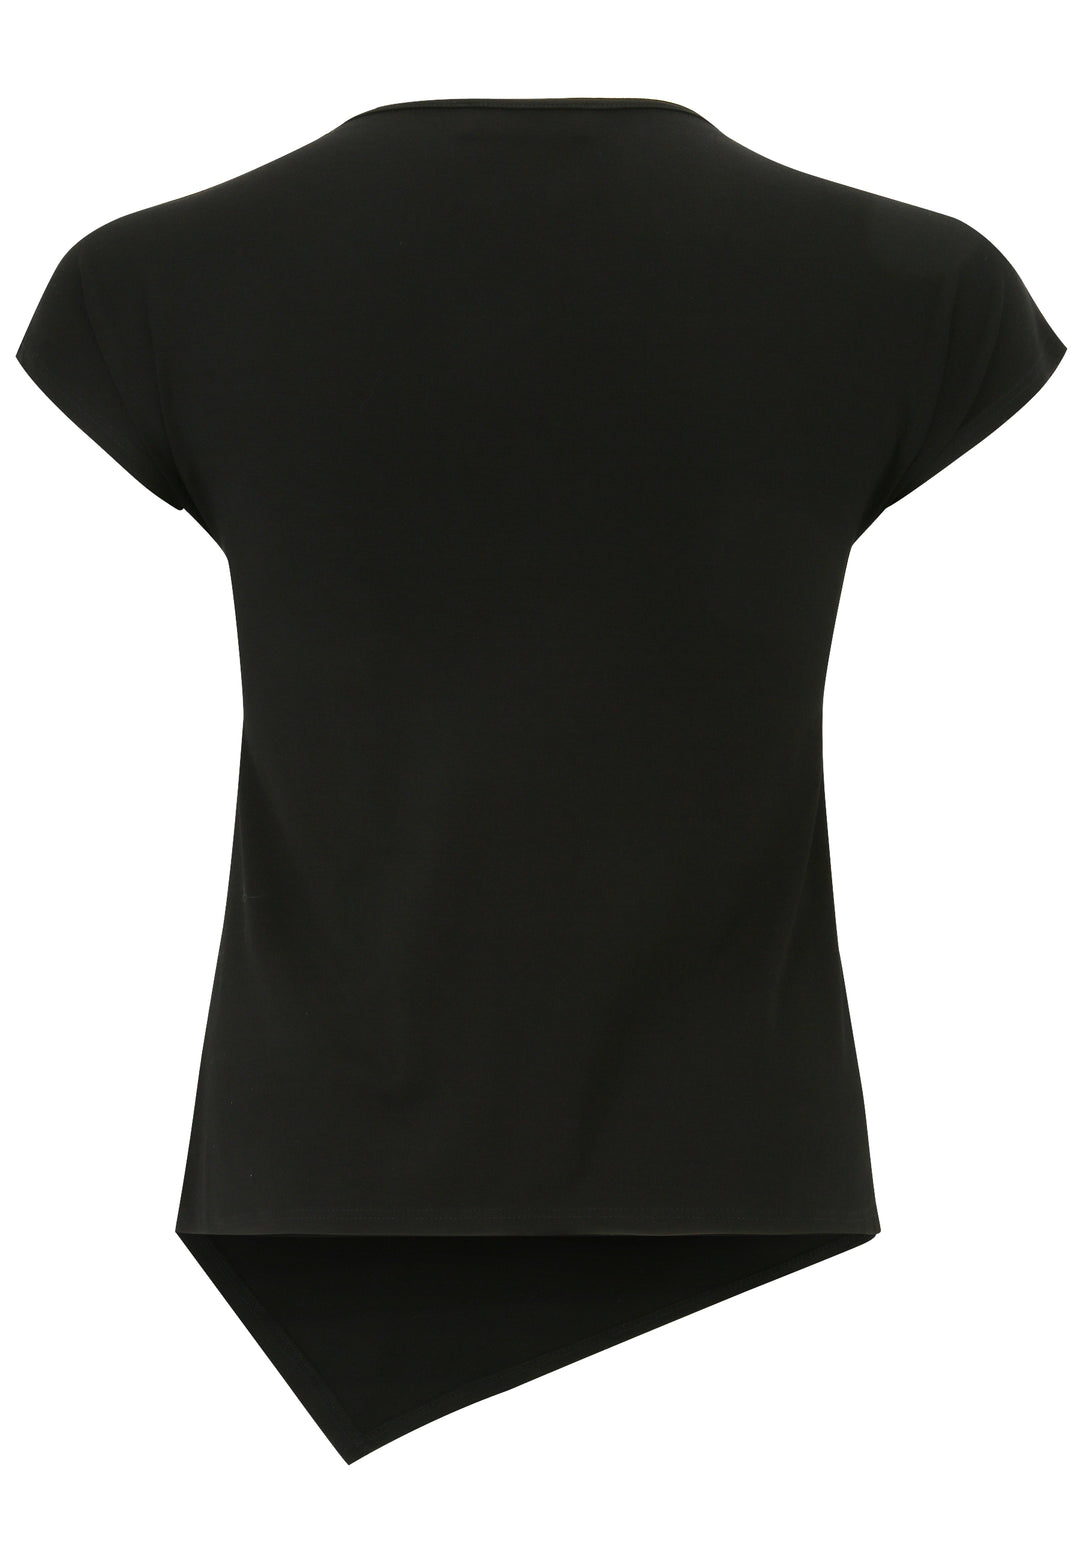 zwart t-shirt met subtiele tekening-doris streich-504270